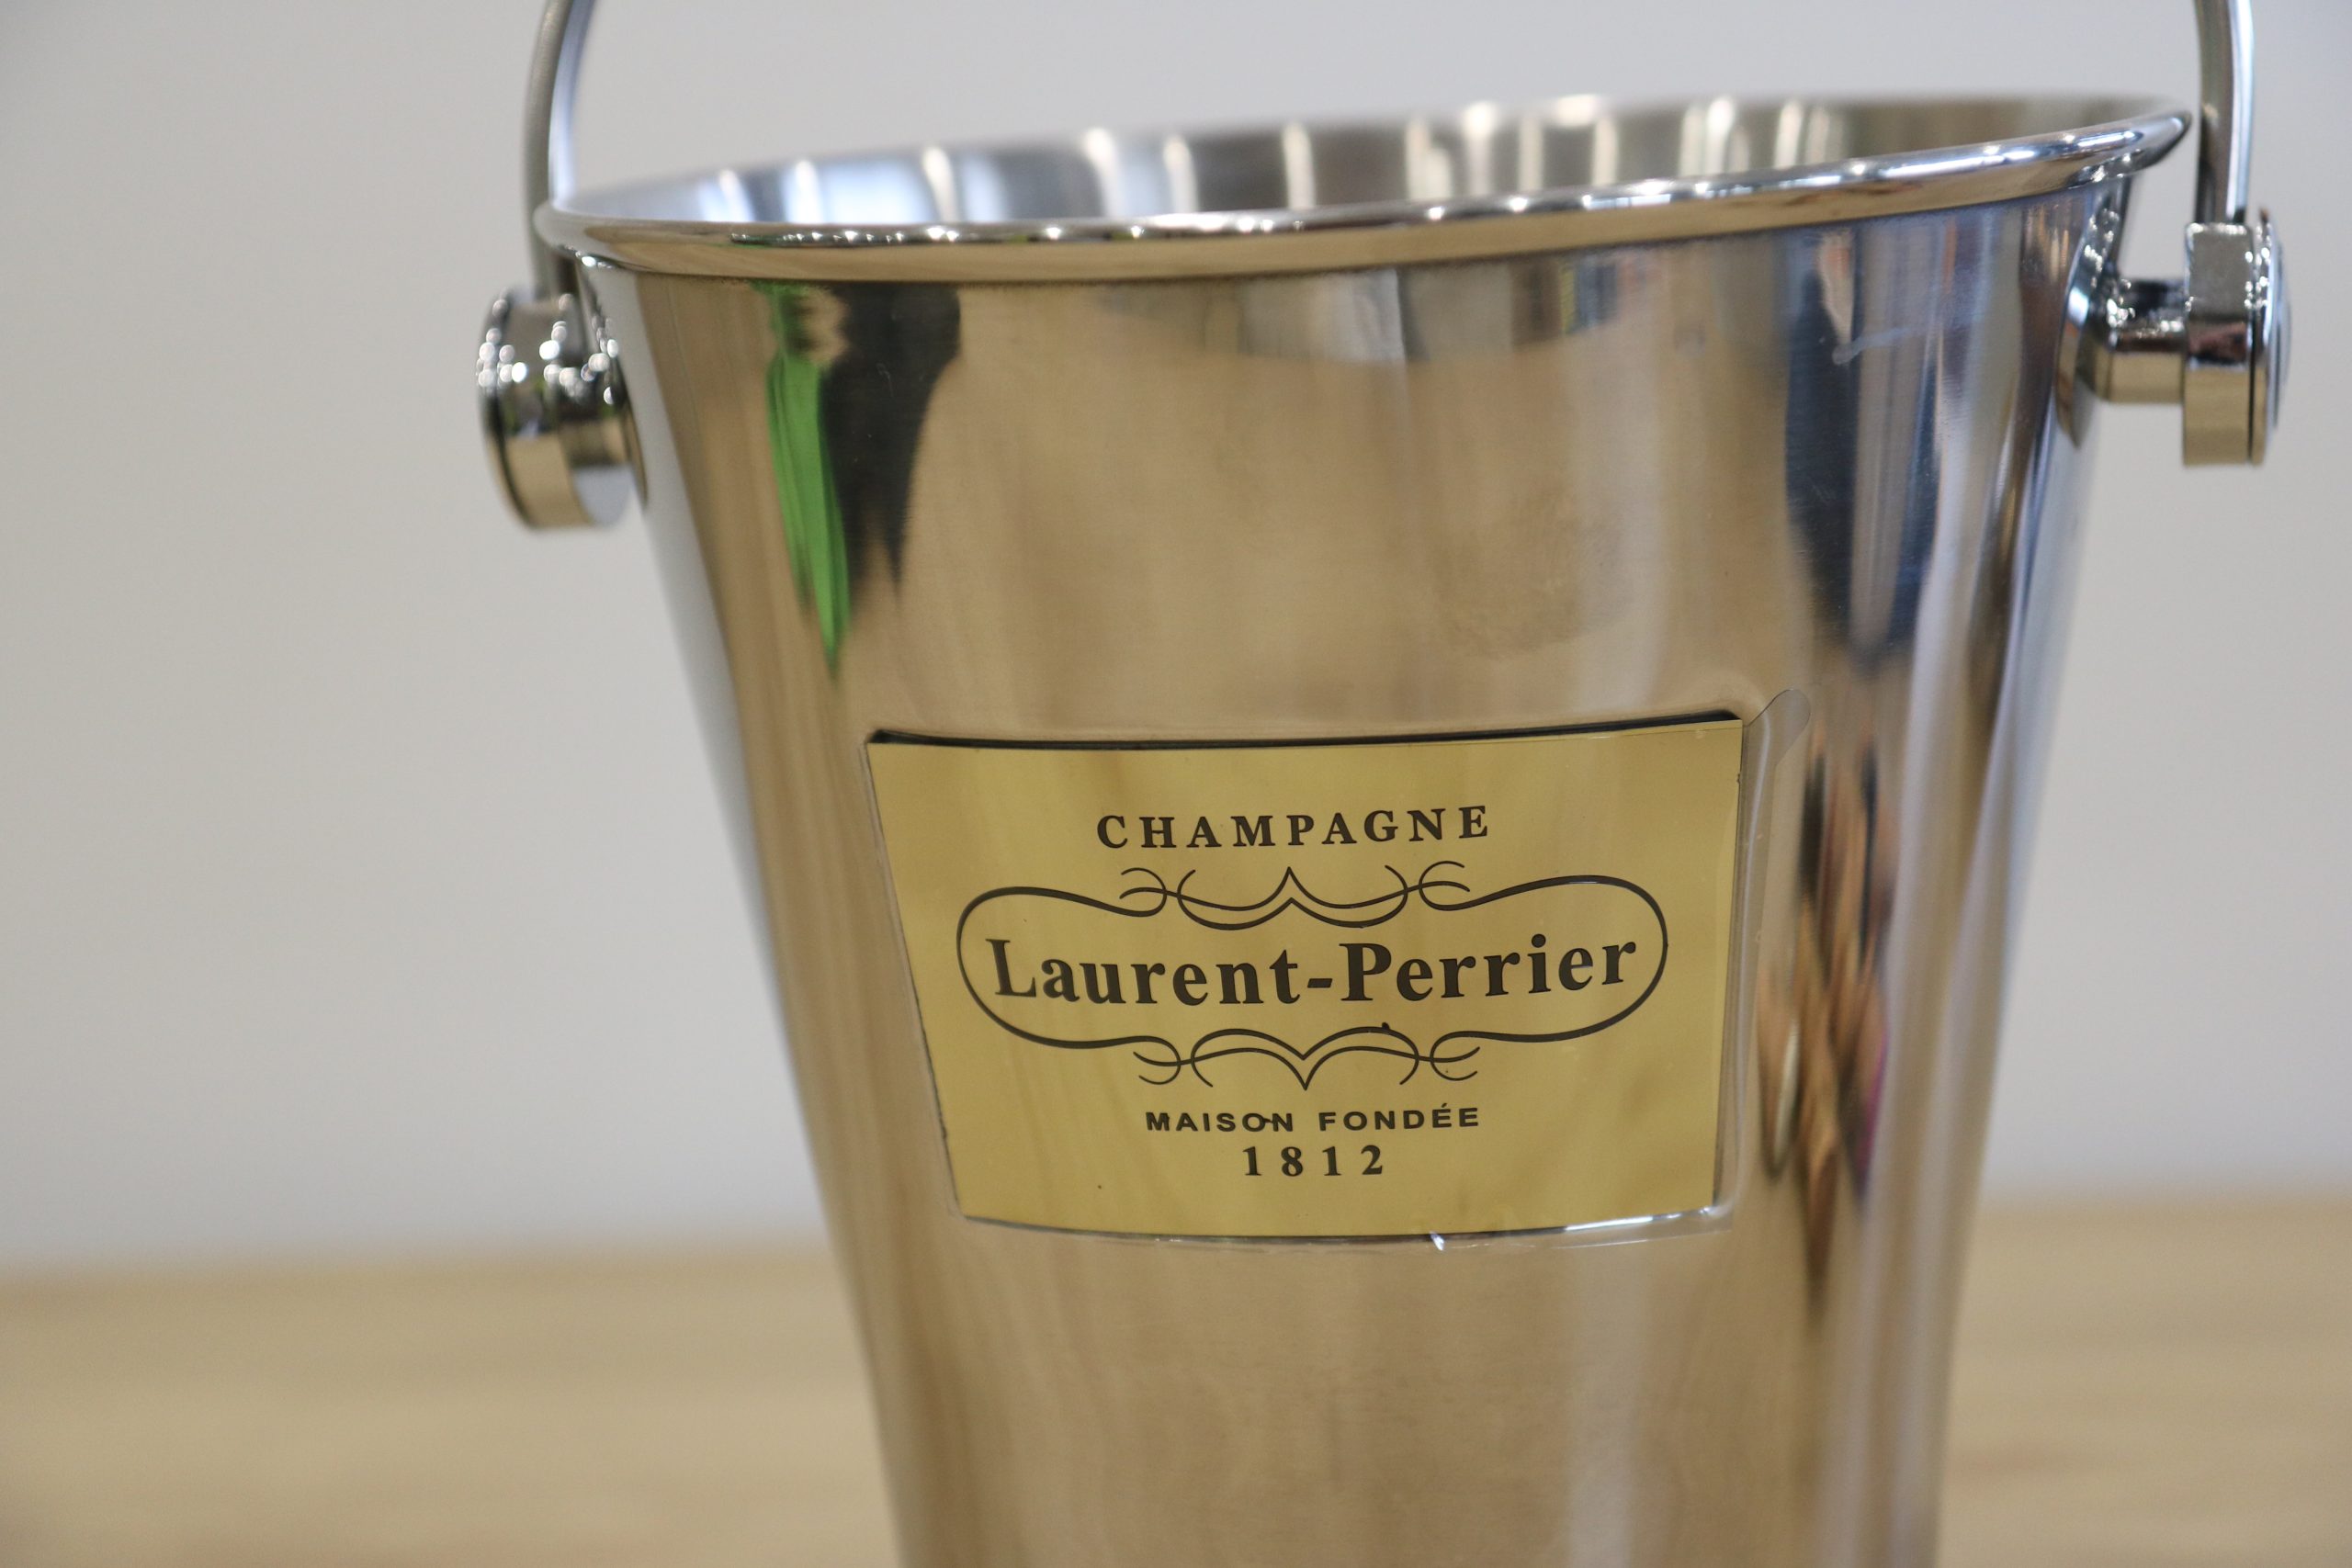 SOLD / ELADVA – Champagne Laurent-Perrier fém pezsgős vödör bőr díszítéssel – 36.400.-Ft